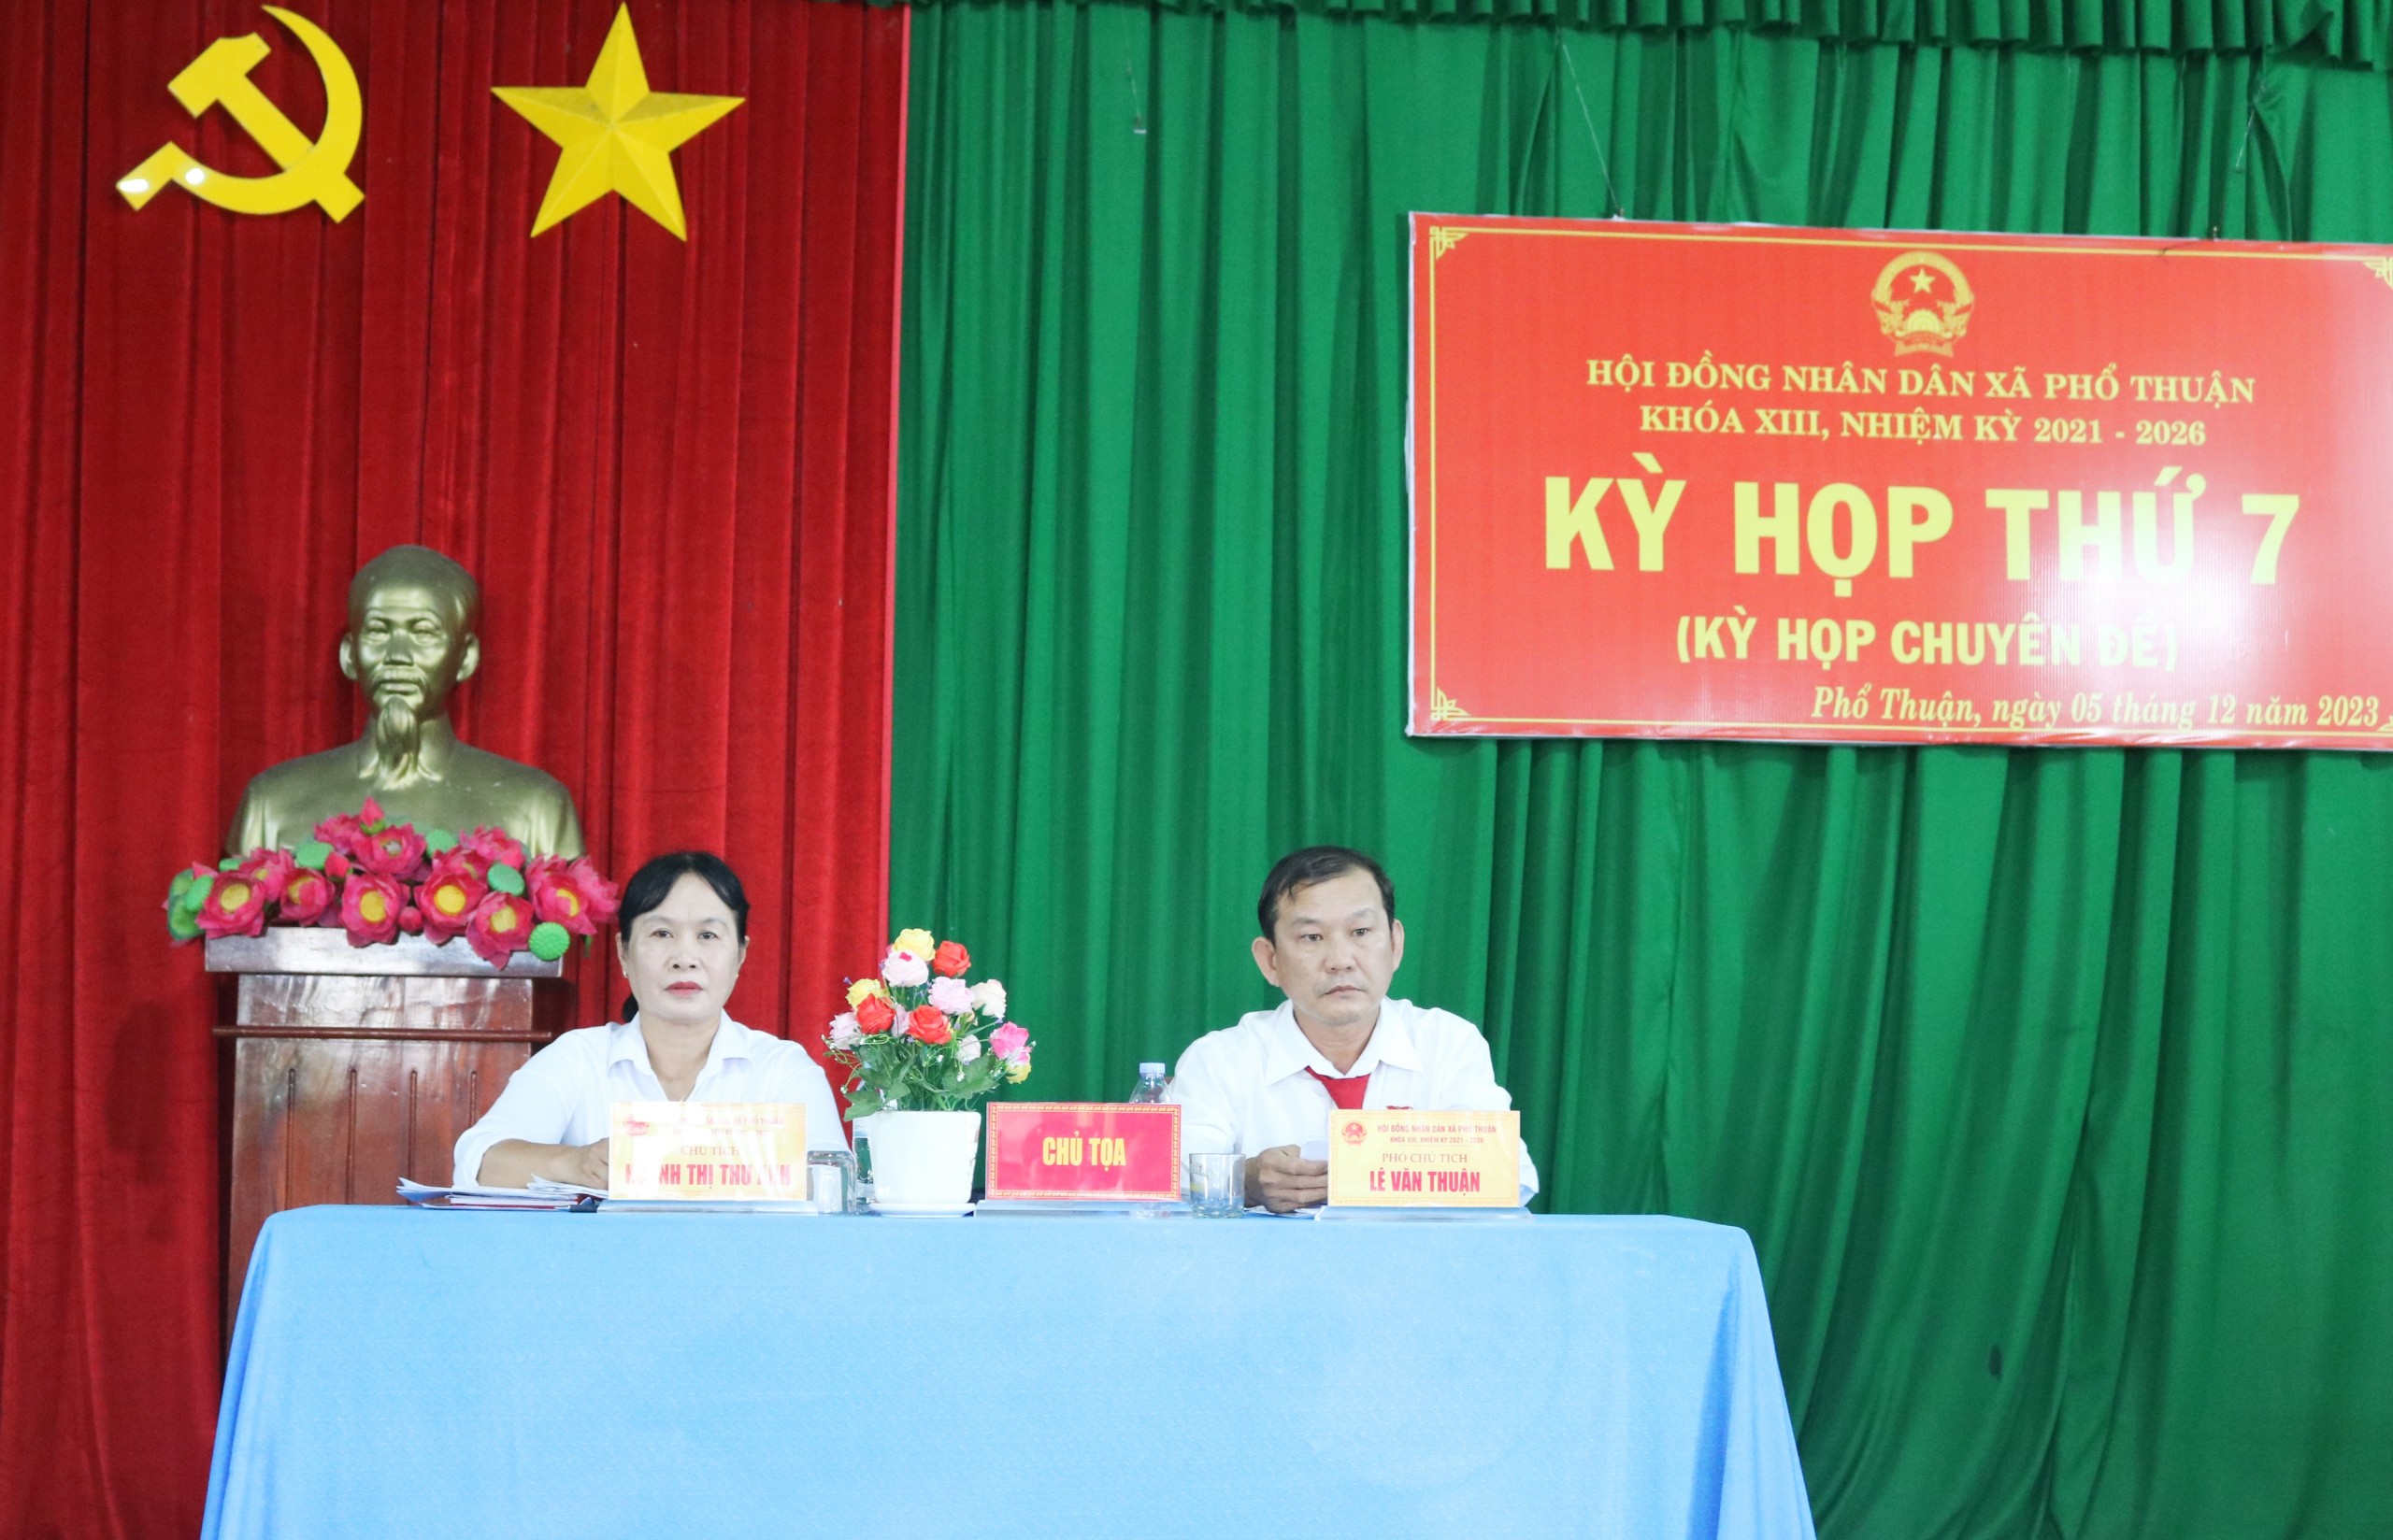 HĐND xã Phổ Thuận khóa XIII tổ chức kỳ họp thứ 7